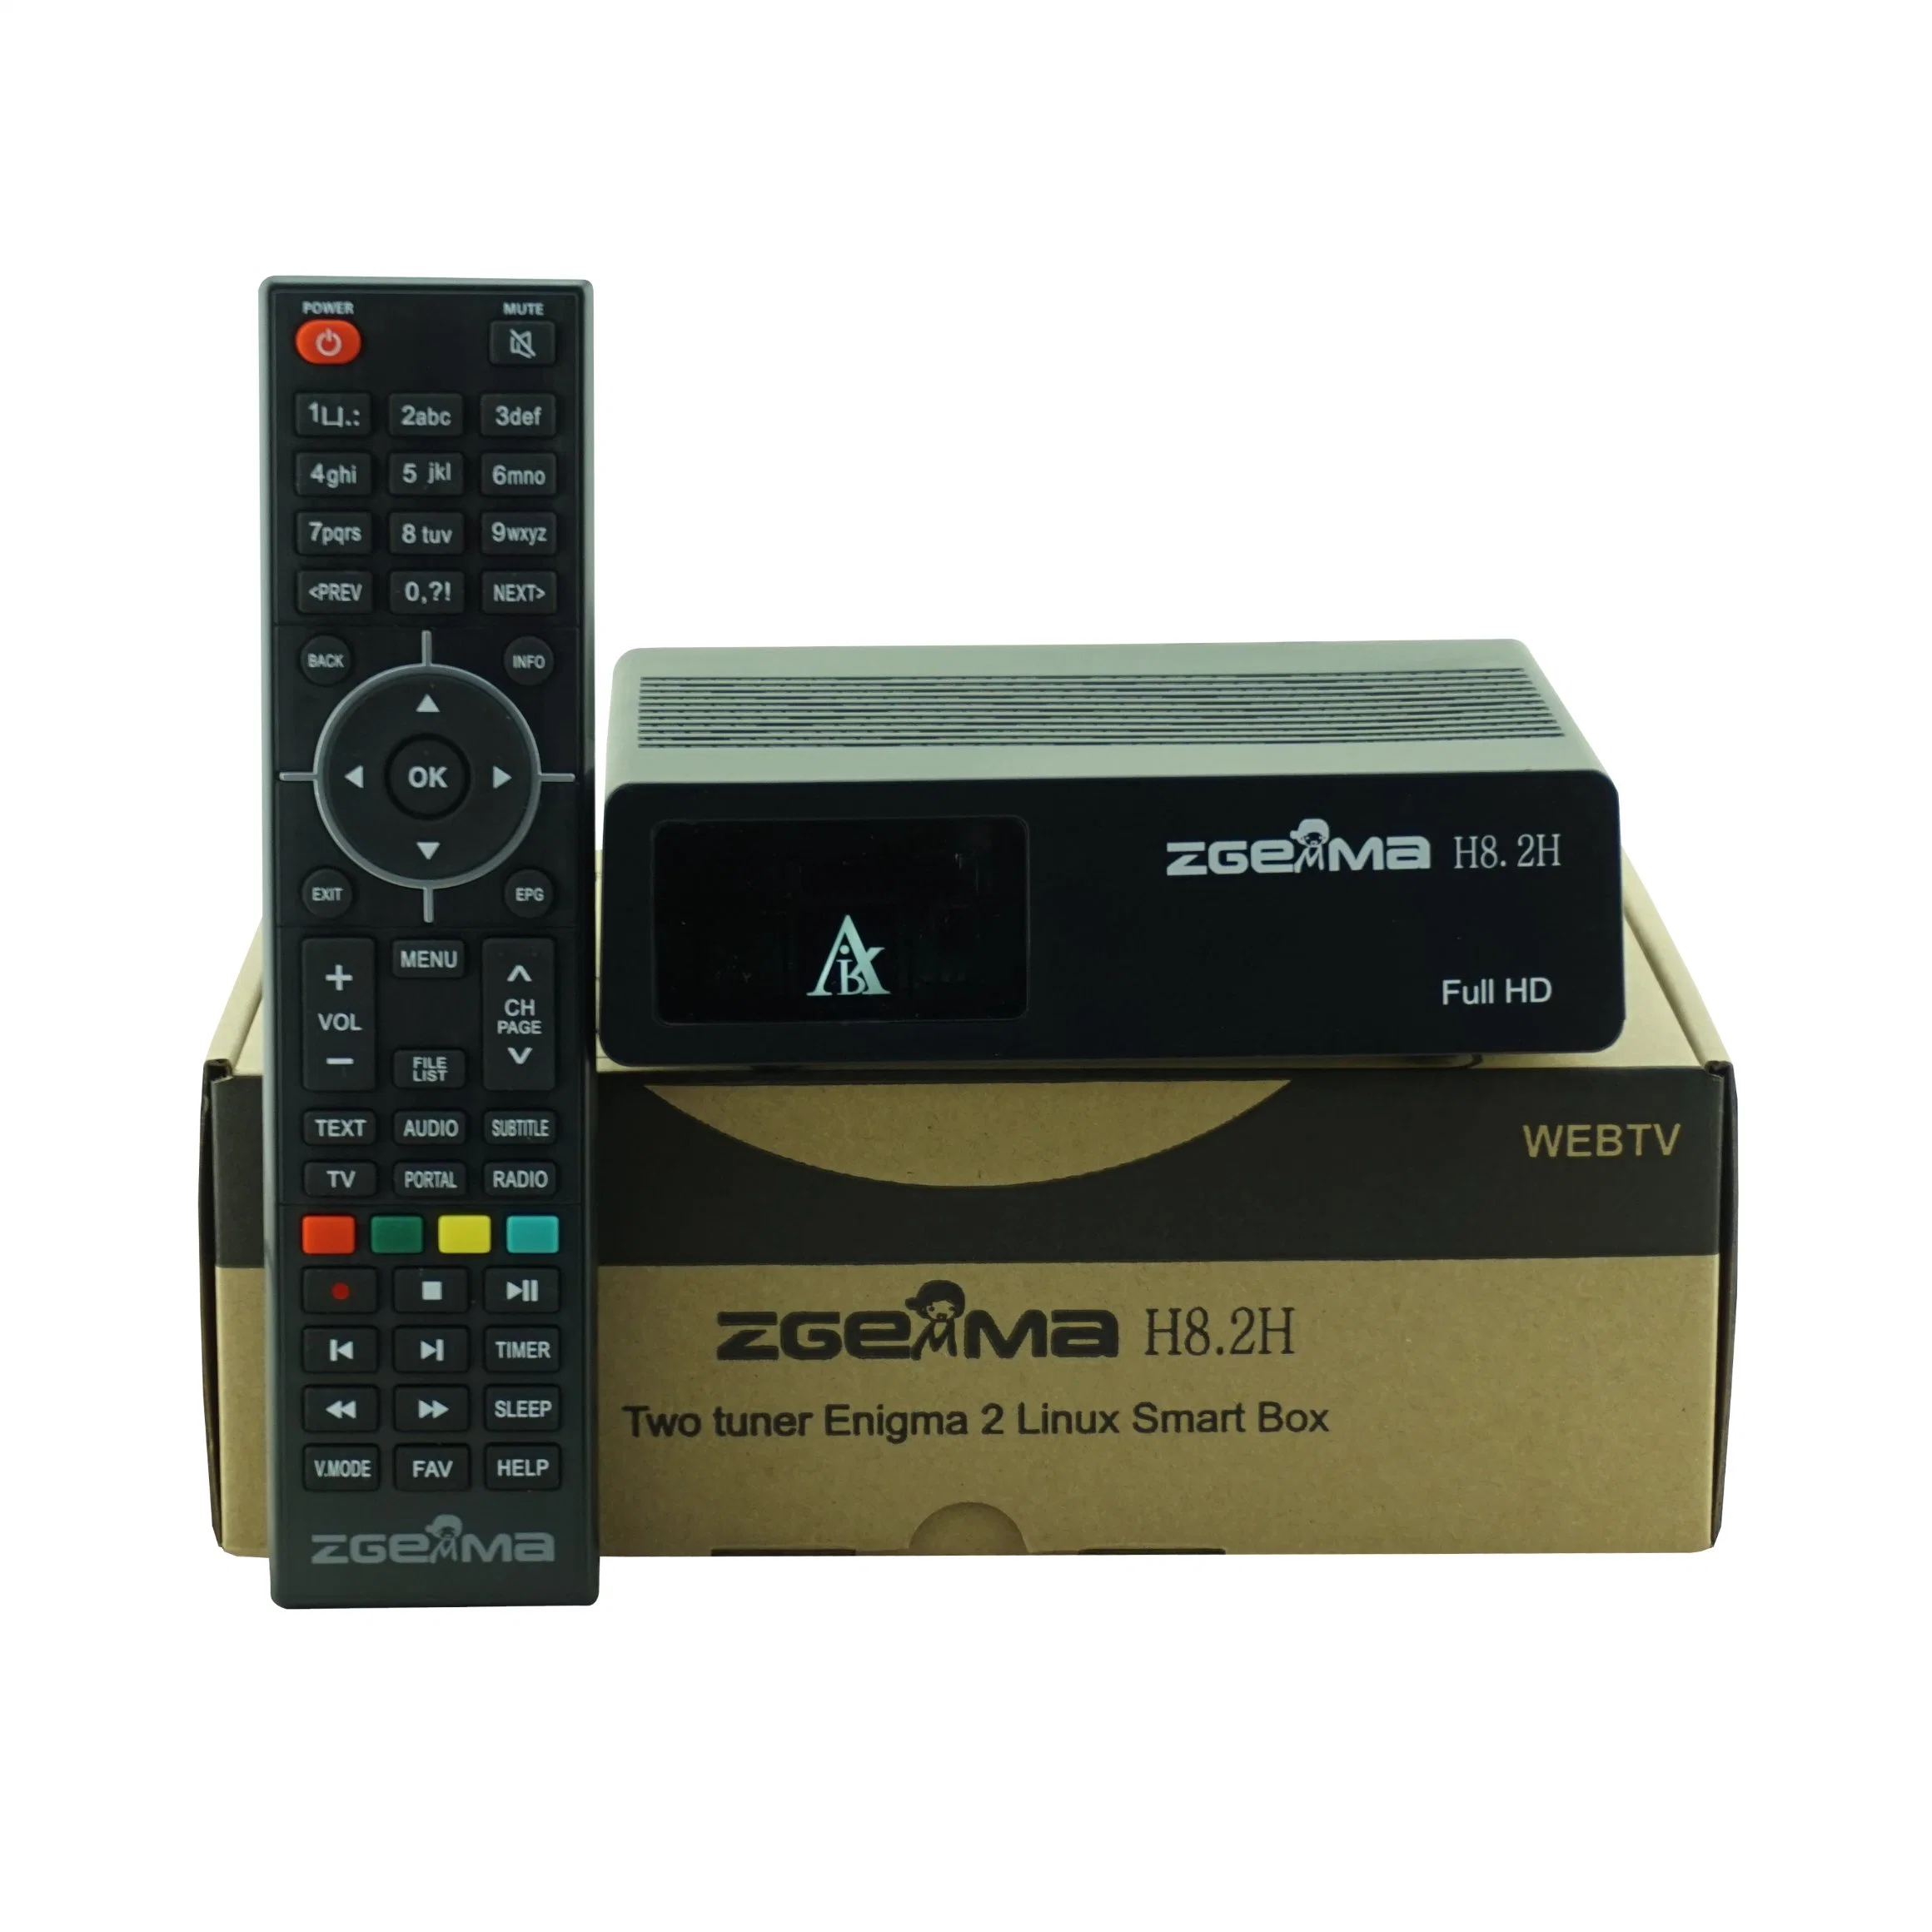 Zgemma H8.2h Satellite TV Receiver Linux OS DVB-S2X + DVB-T2/C Combo Tuner Built-in